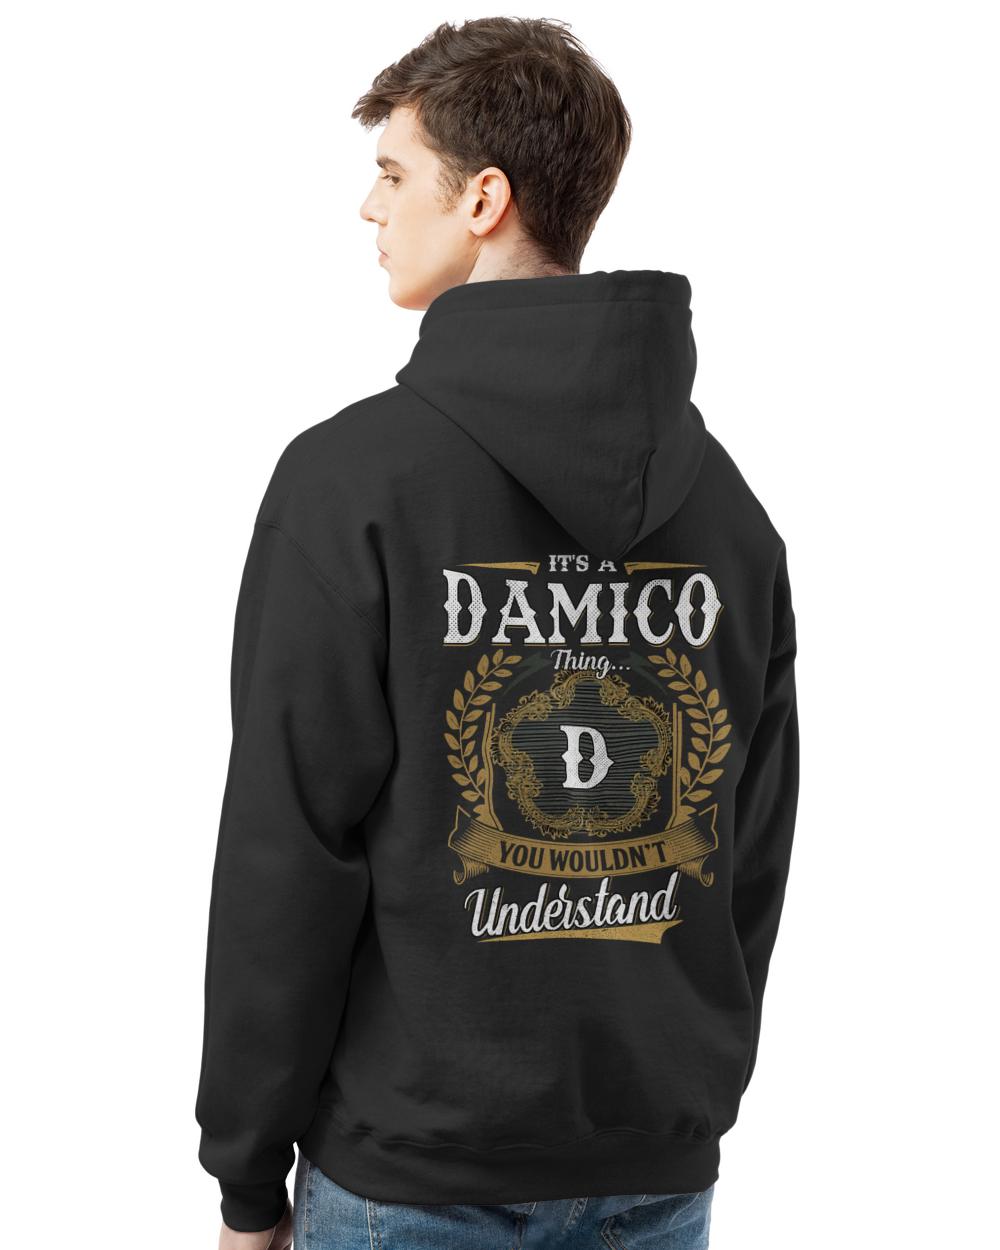 DAMICO-13K-1-01